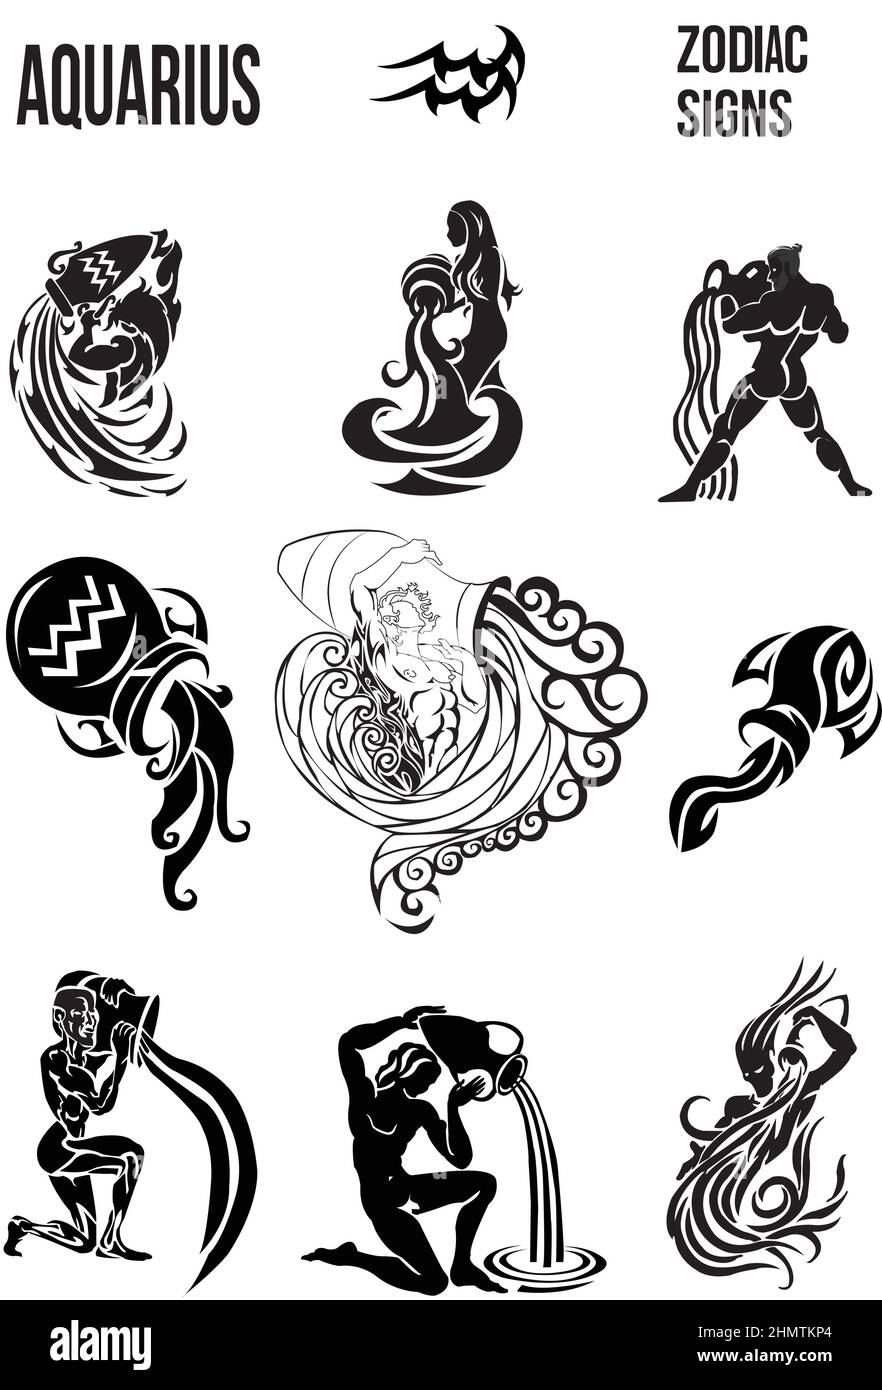 Simboli zodiacali dell'Acquario Illustrazione Vettoriale